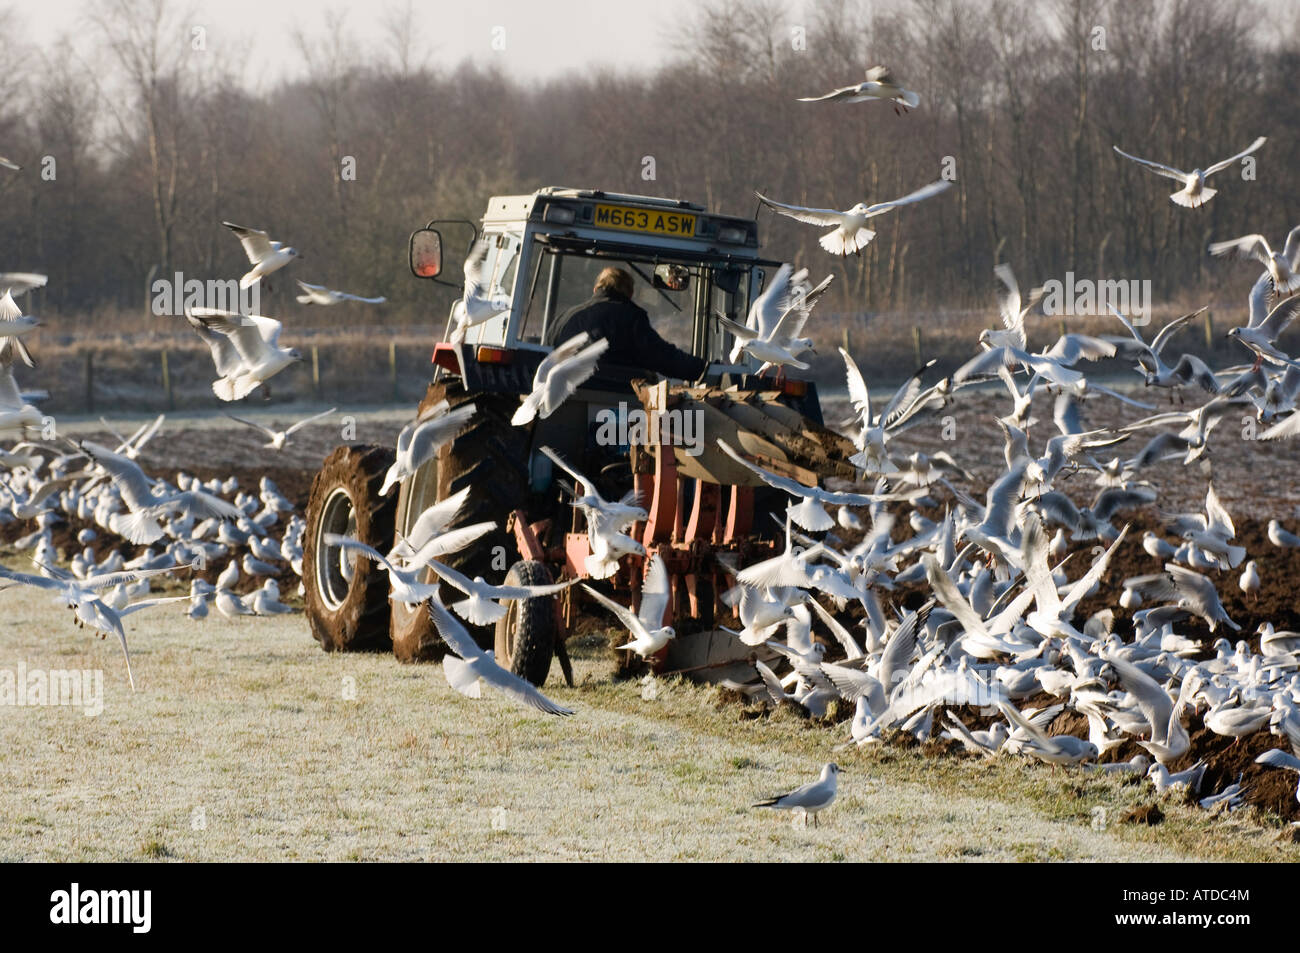 L'opérateur Du Tracteur S'inverse Pour Continuer Le Labourage Photo stock -  Image du oiseau, herbe: 274529988